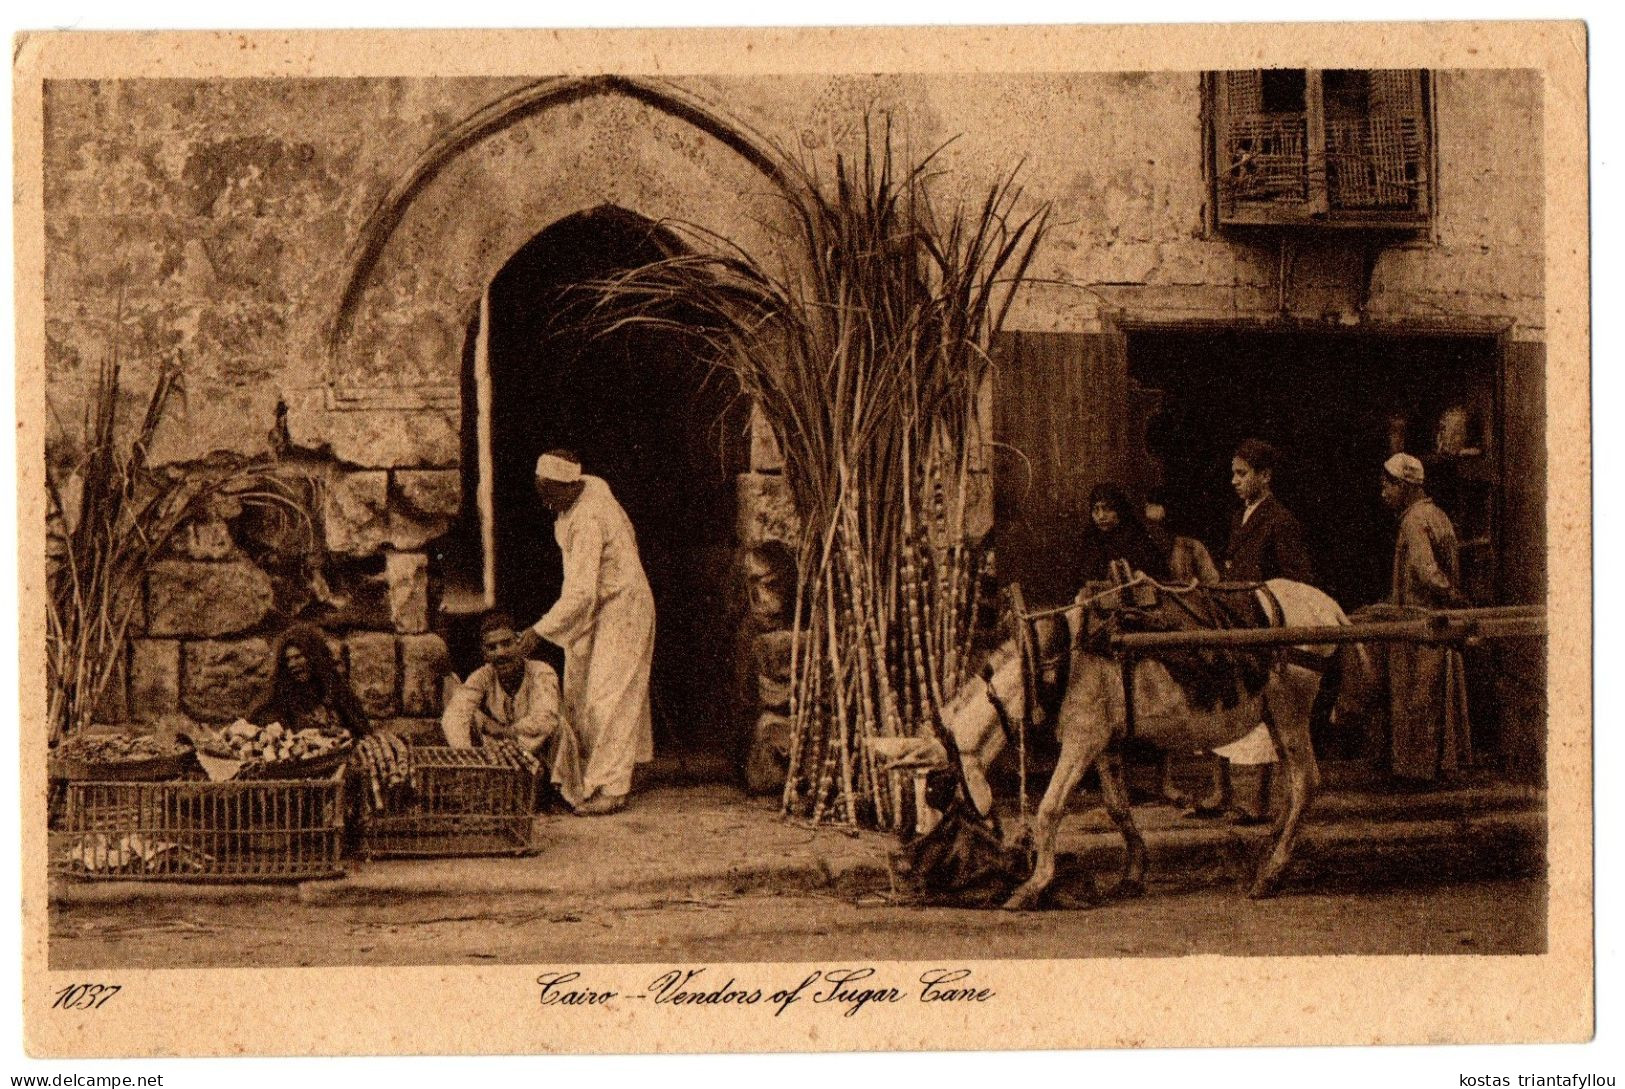 4.1.12 EGYPT, CAIRO, VENDORS OF SUGAR CANE, 1928, POSTCARD - Caïro